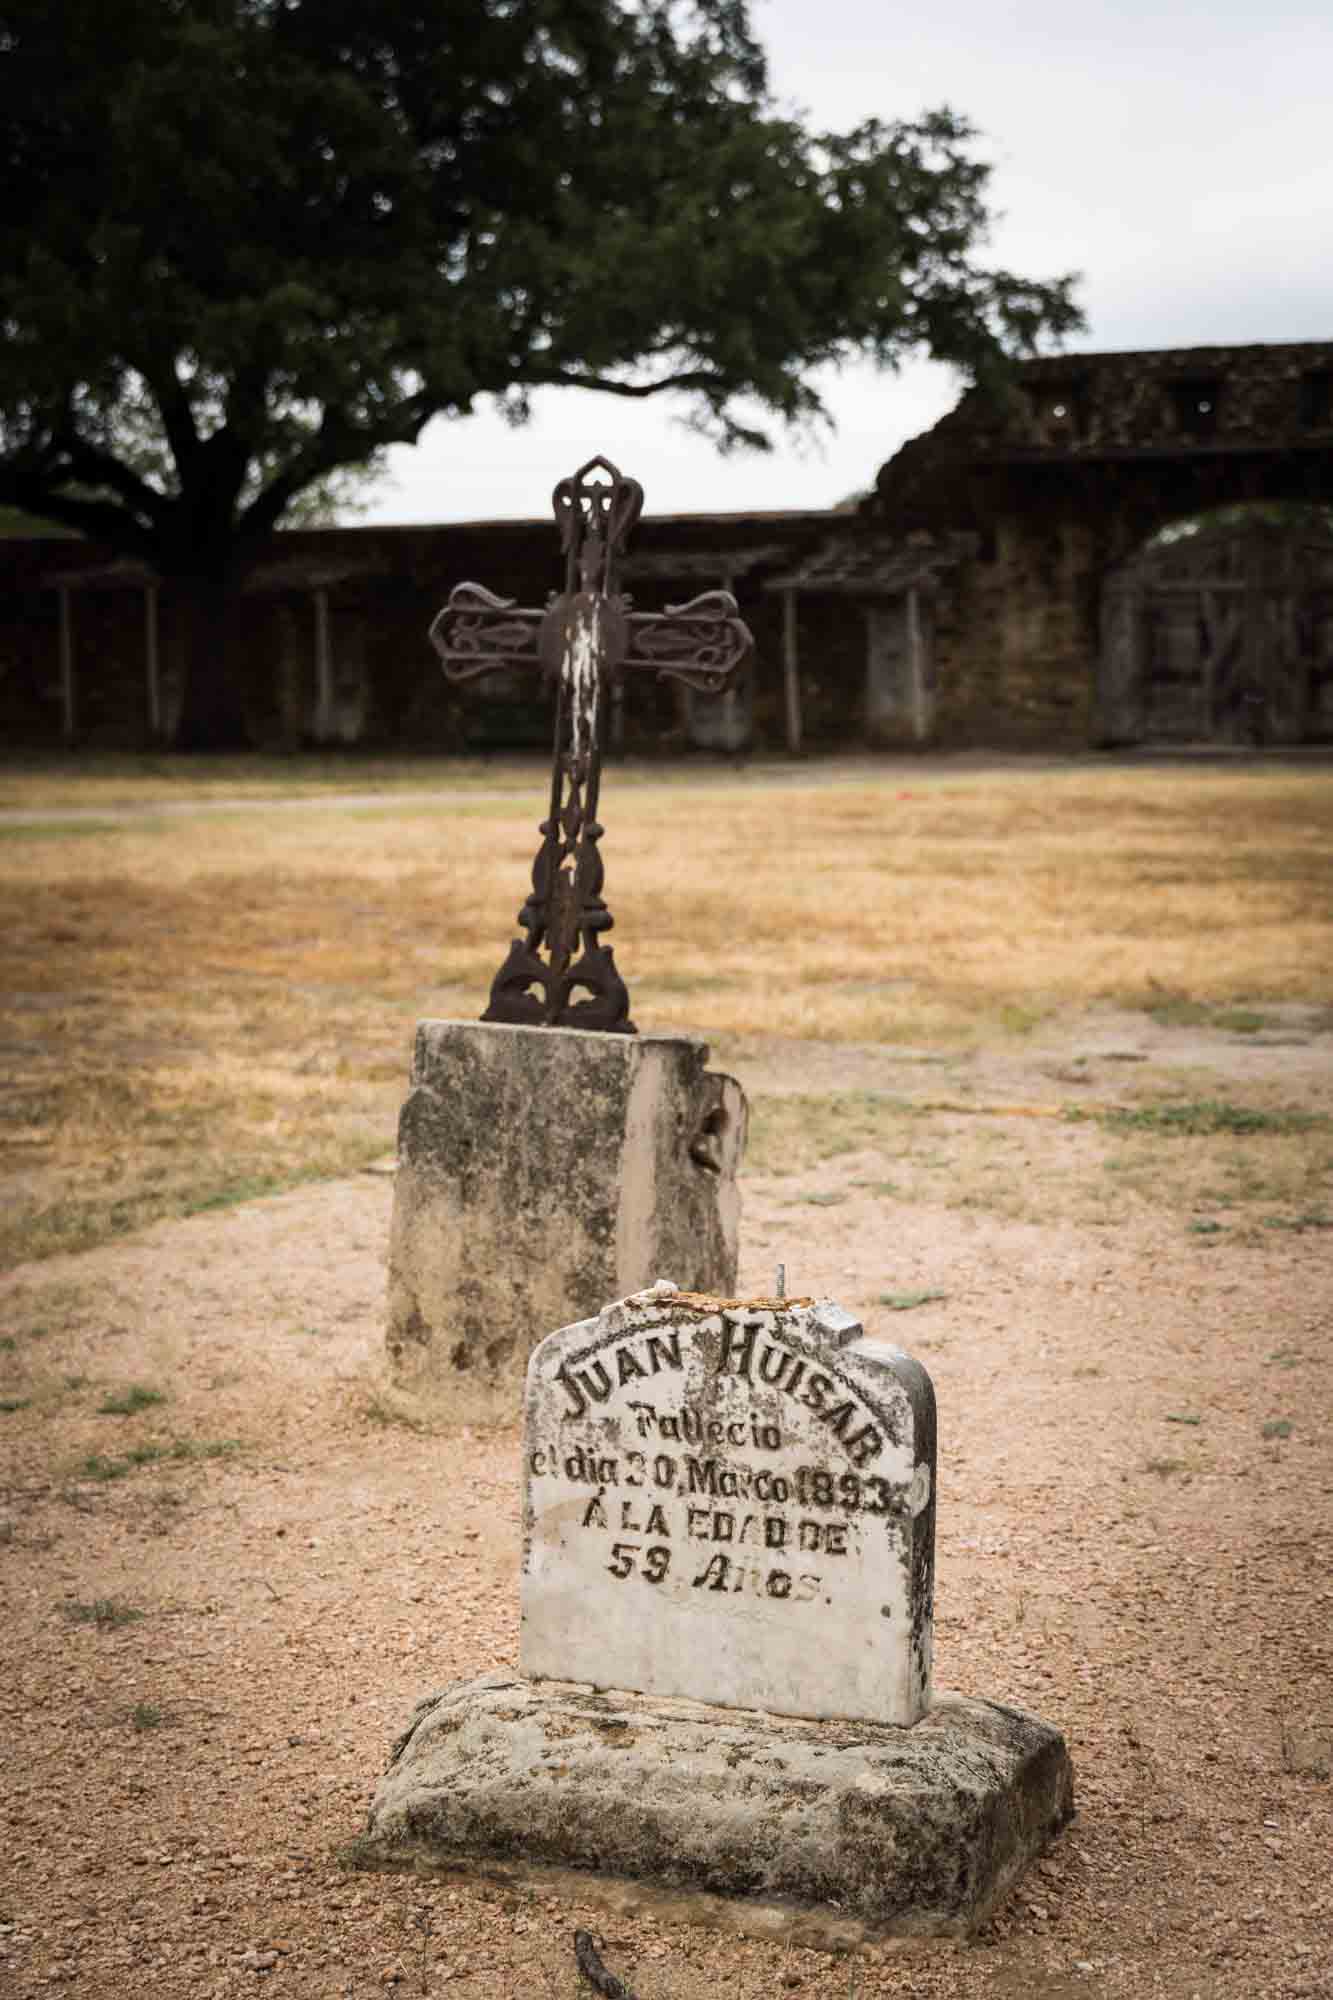 Gravestone and metal cross at Mission San Juan in San Antonio